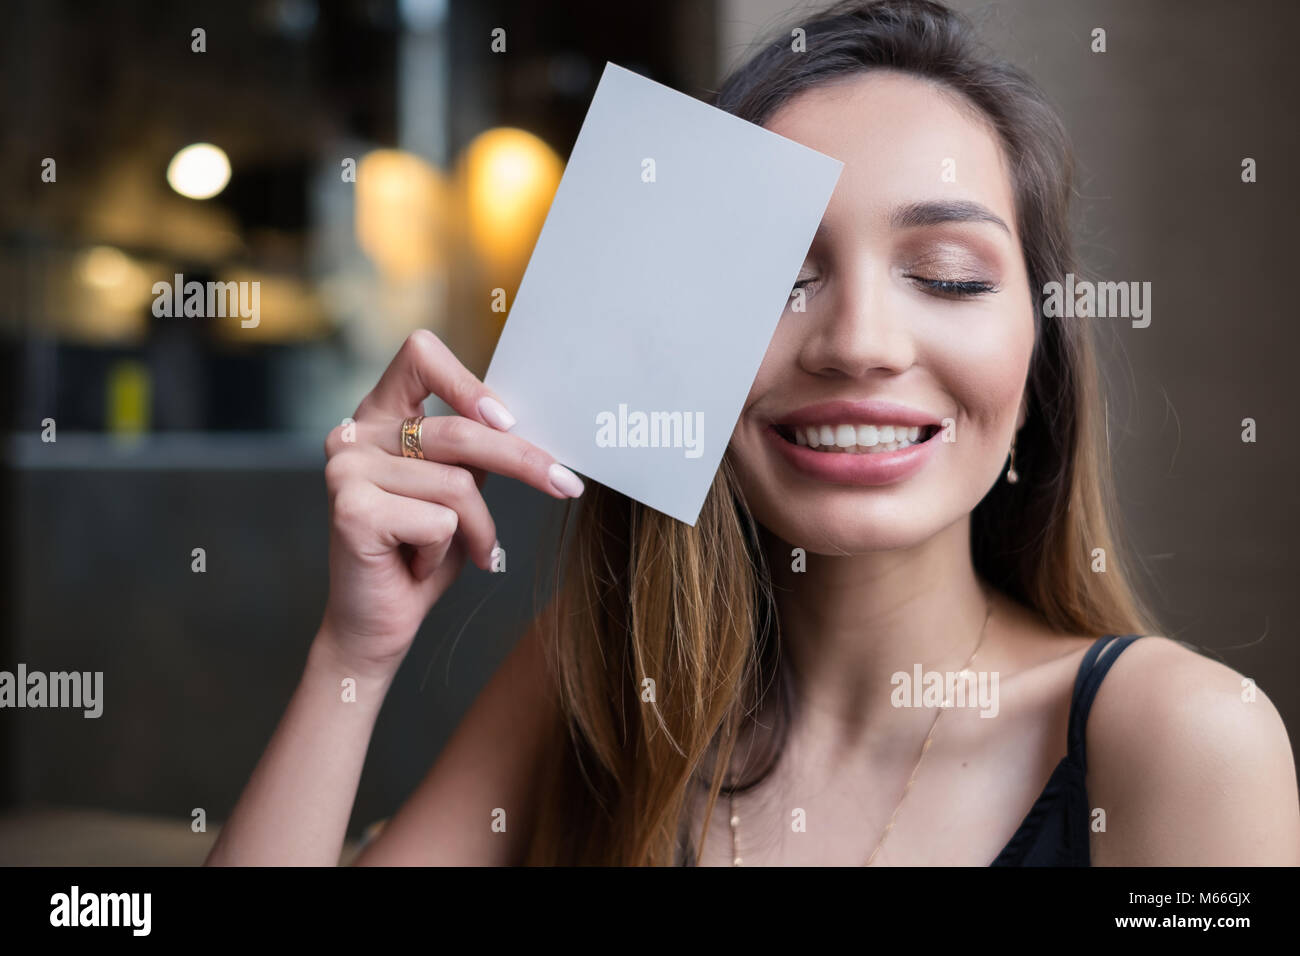 Smiling woman holding carte vierge en face de son visage Banque D'Images